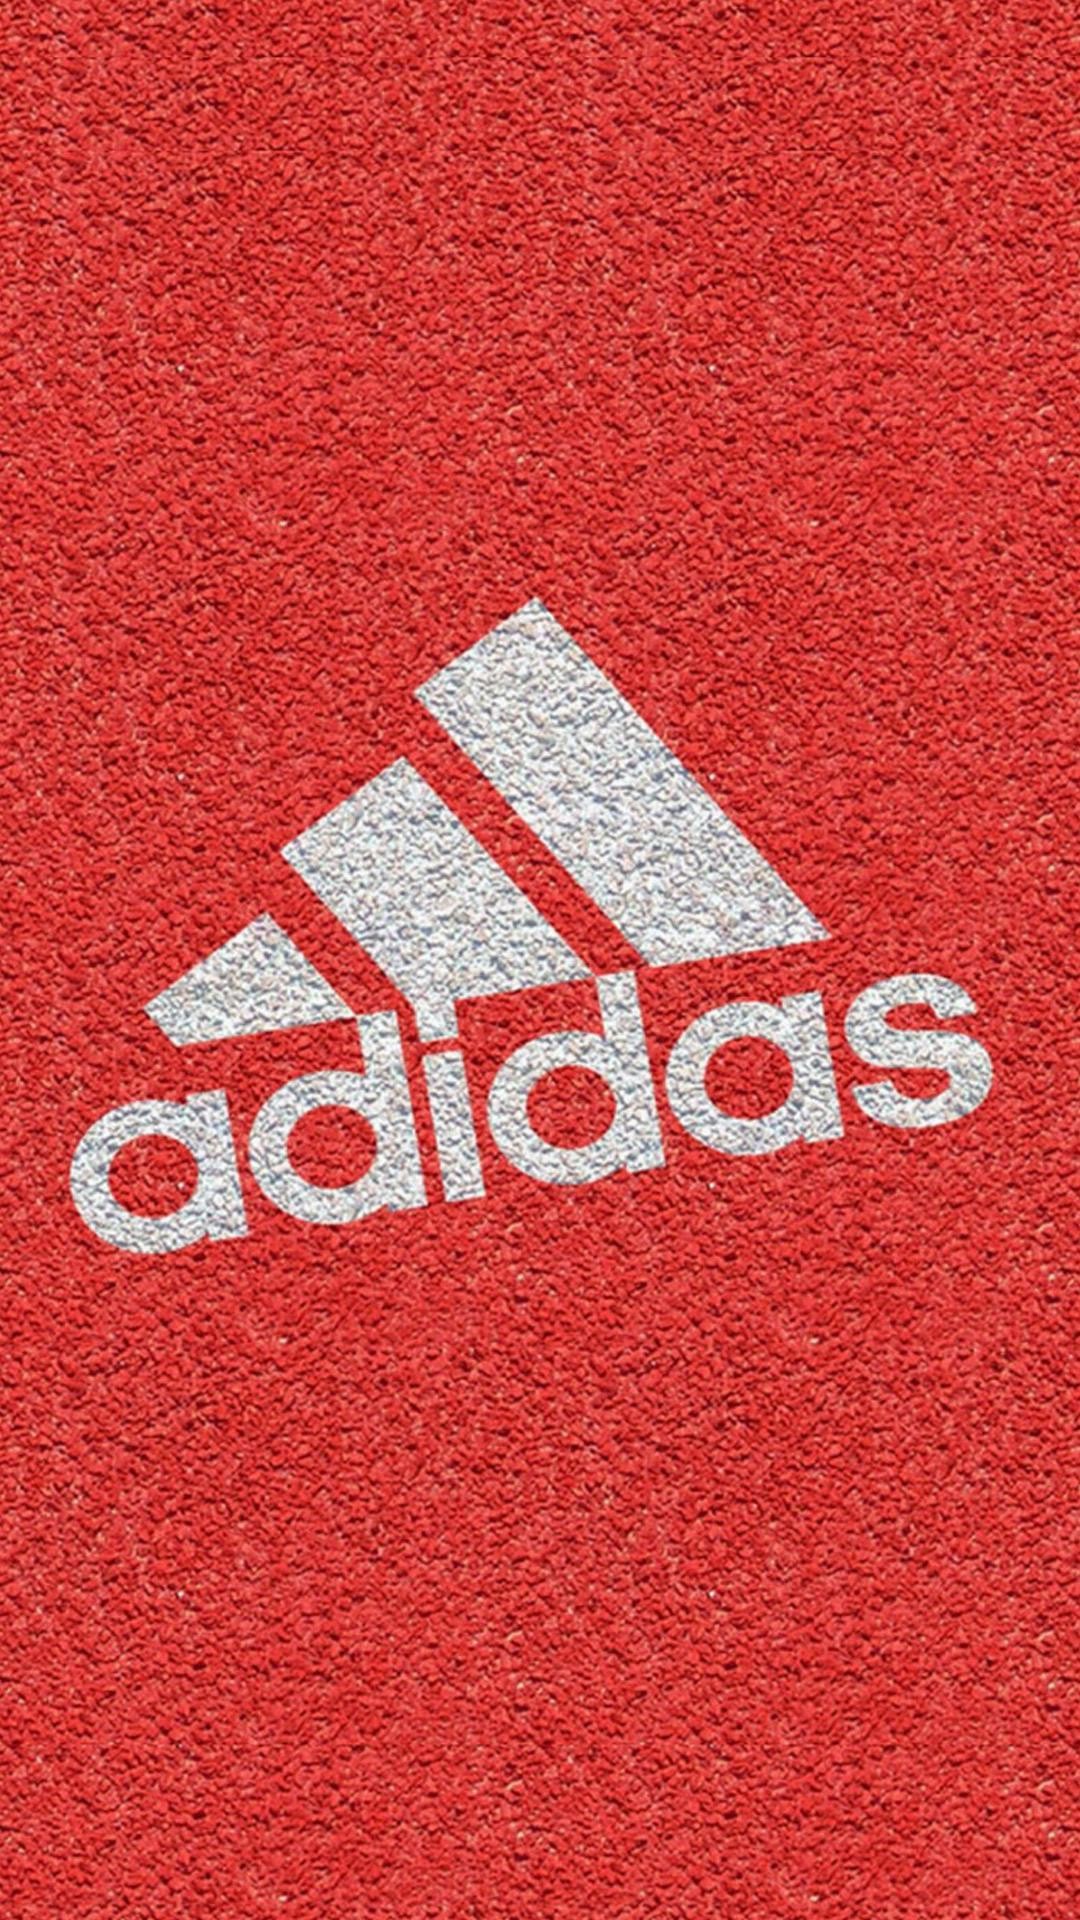 Adidas Wallpaper Hd Iphone X Off 66 Willsfuneralservice Com